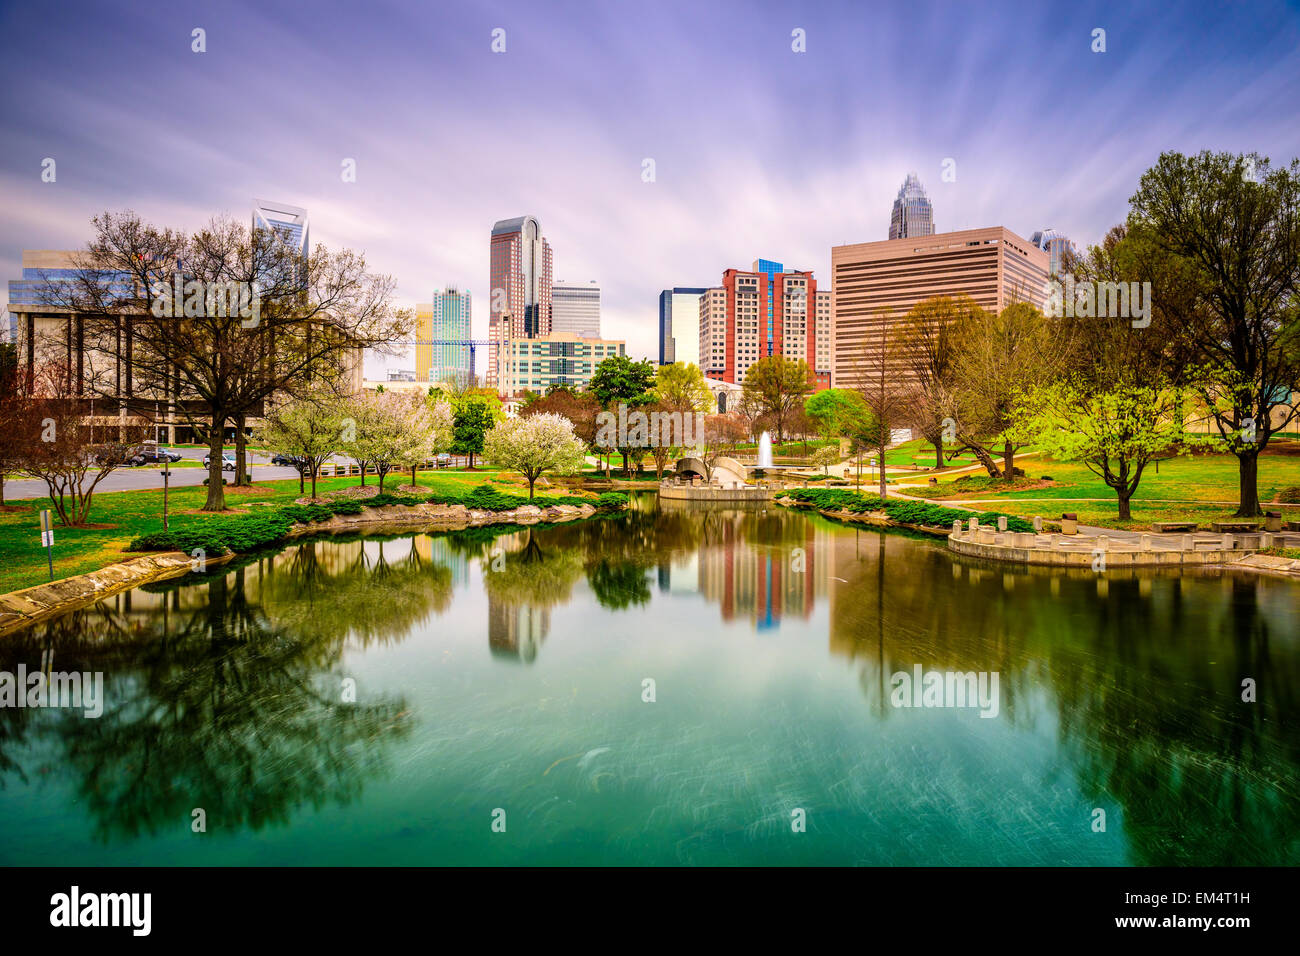 Charlotte, North Carolina, USA skyline. Stock Photo